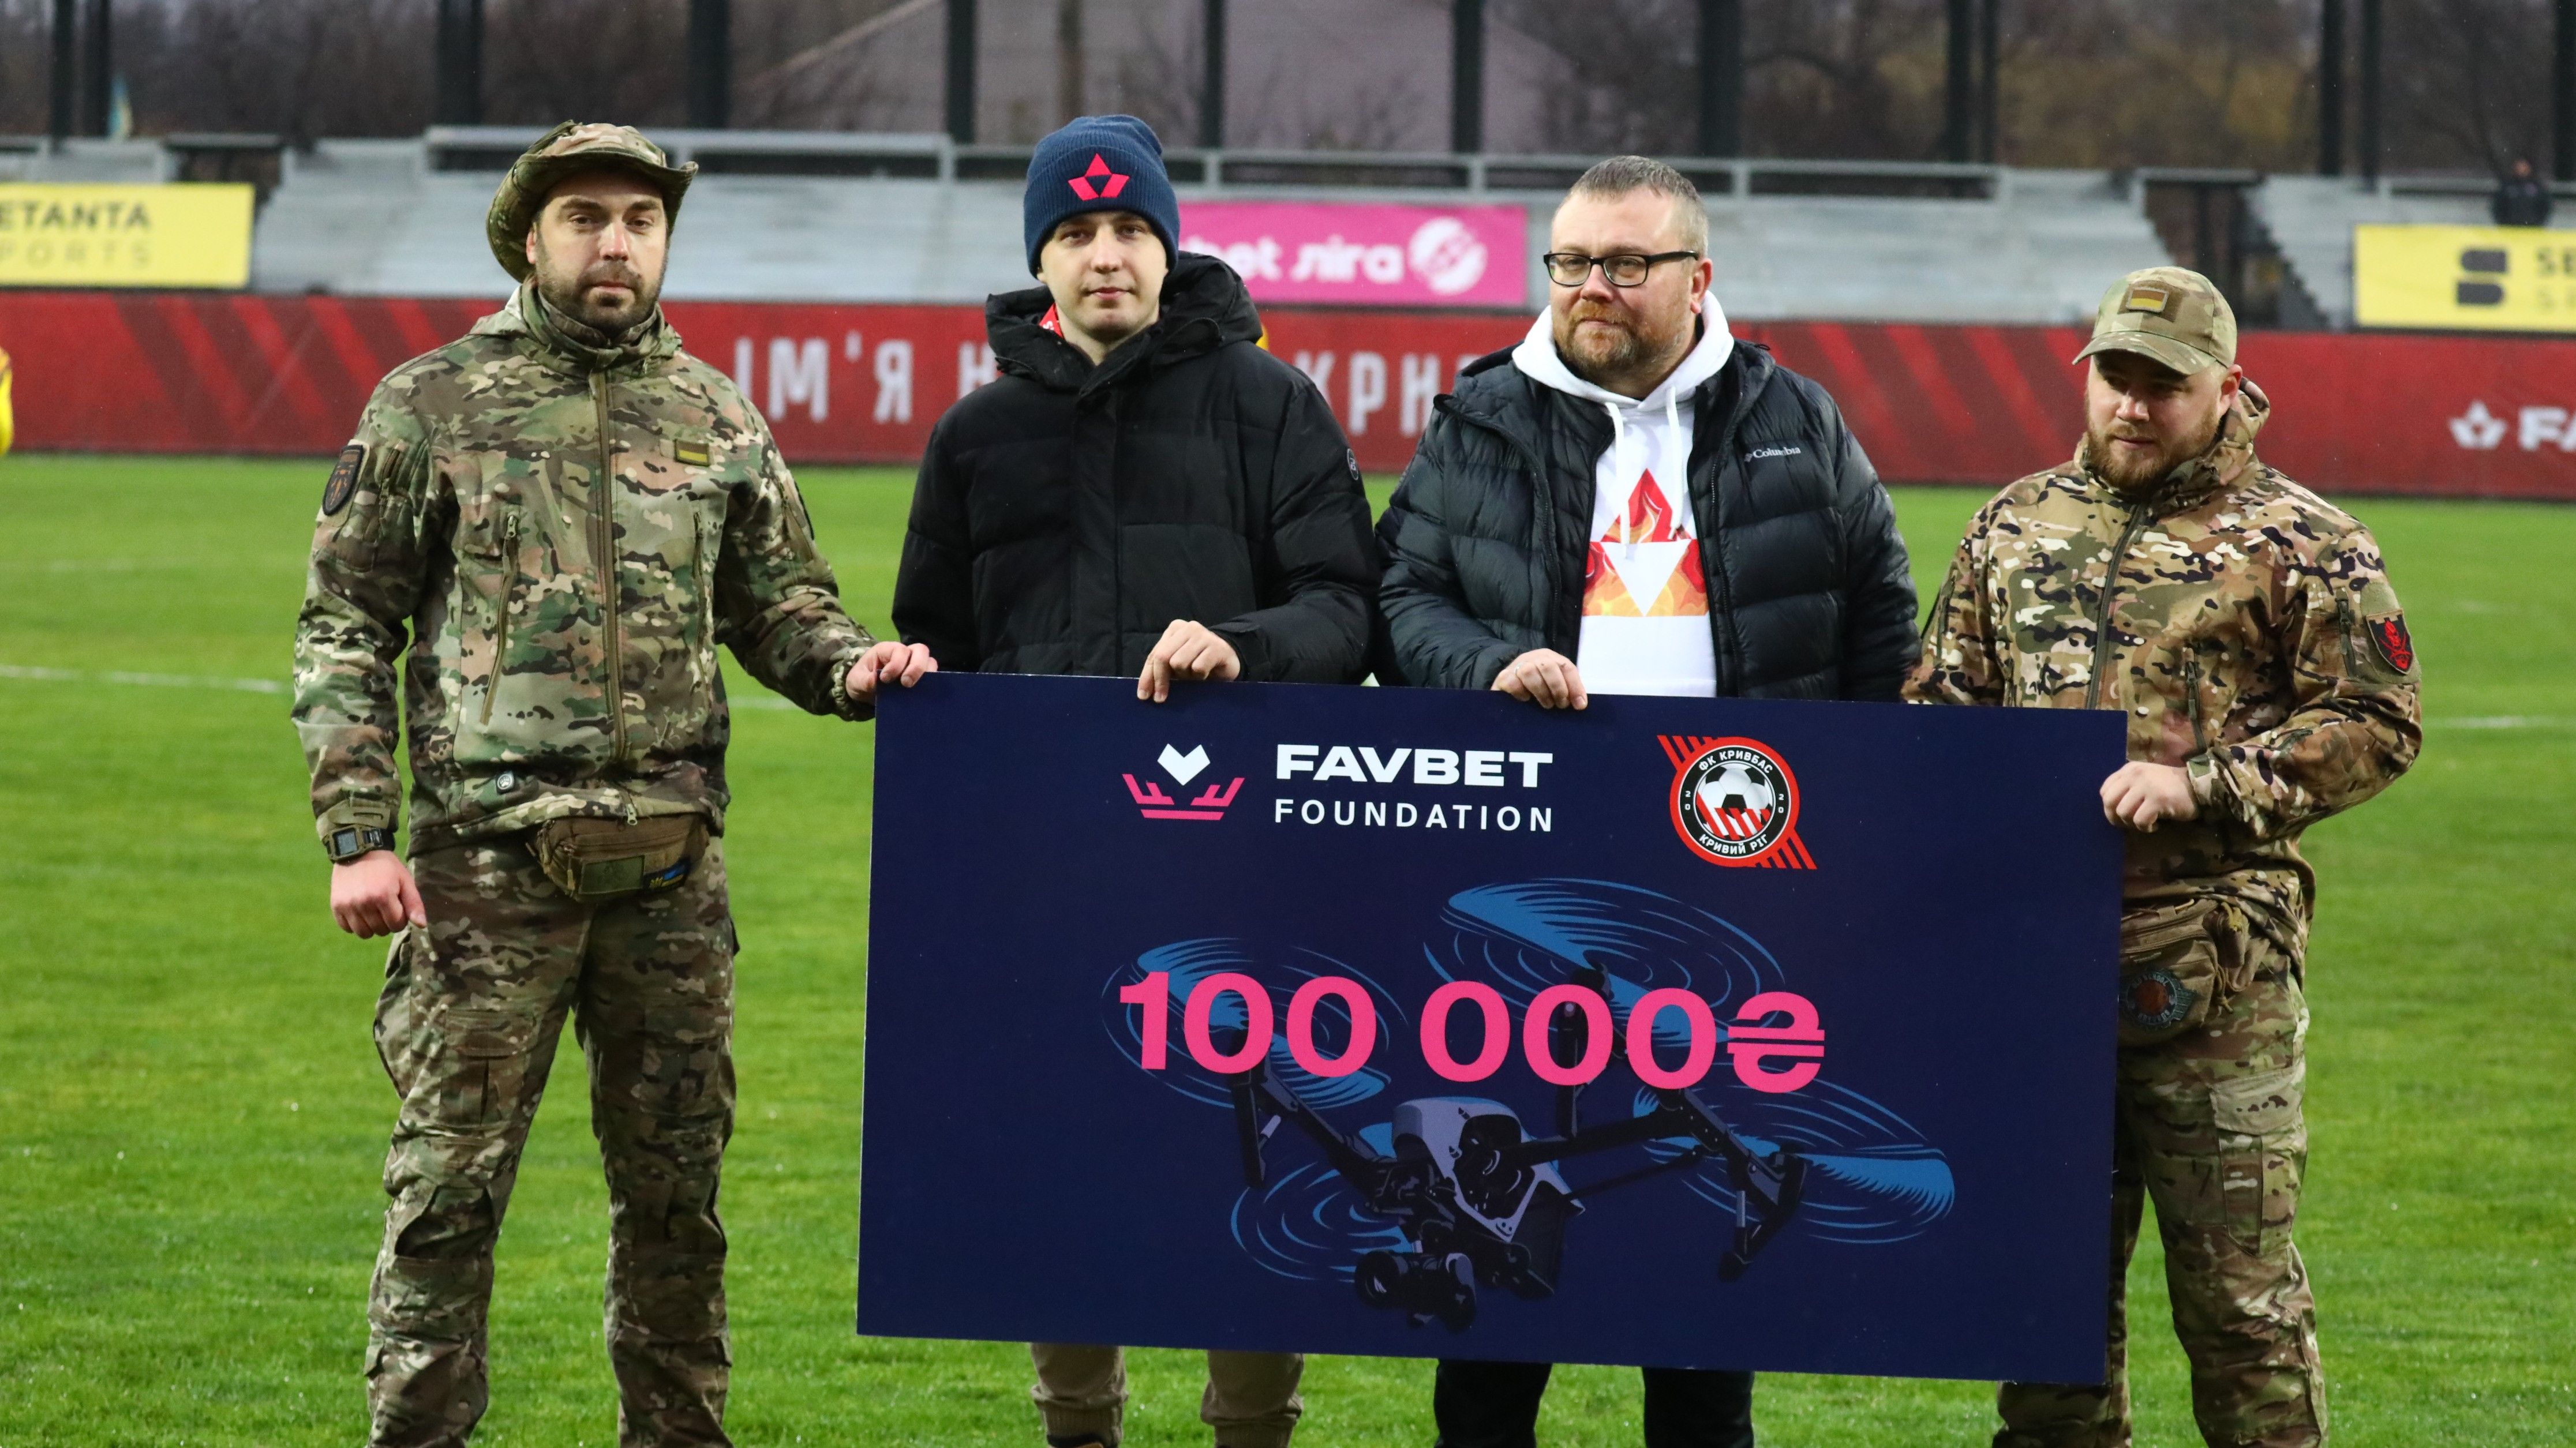 Favbet Foundation передав 100 000 гривень підрозділу, де служить співробітник ФК "Кривбас"